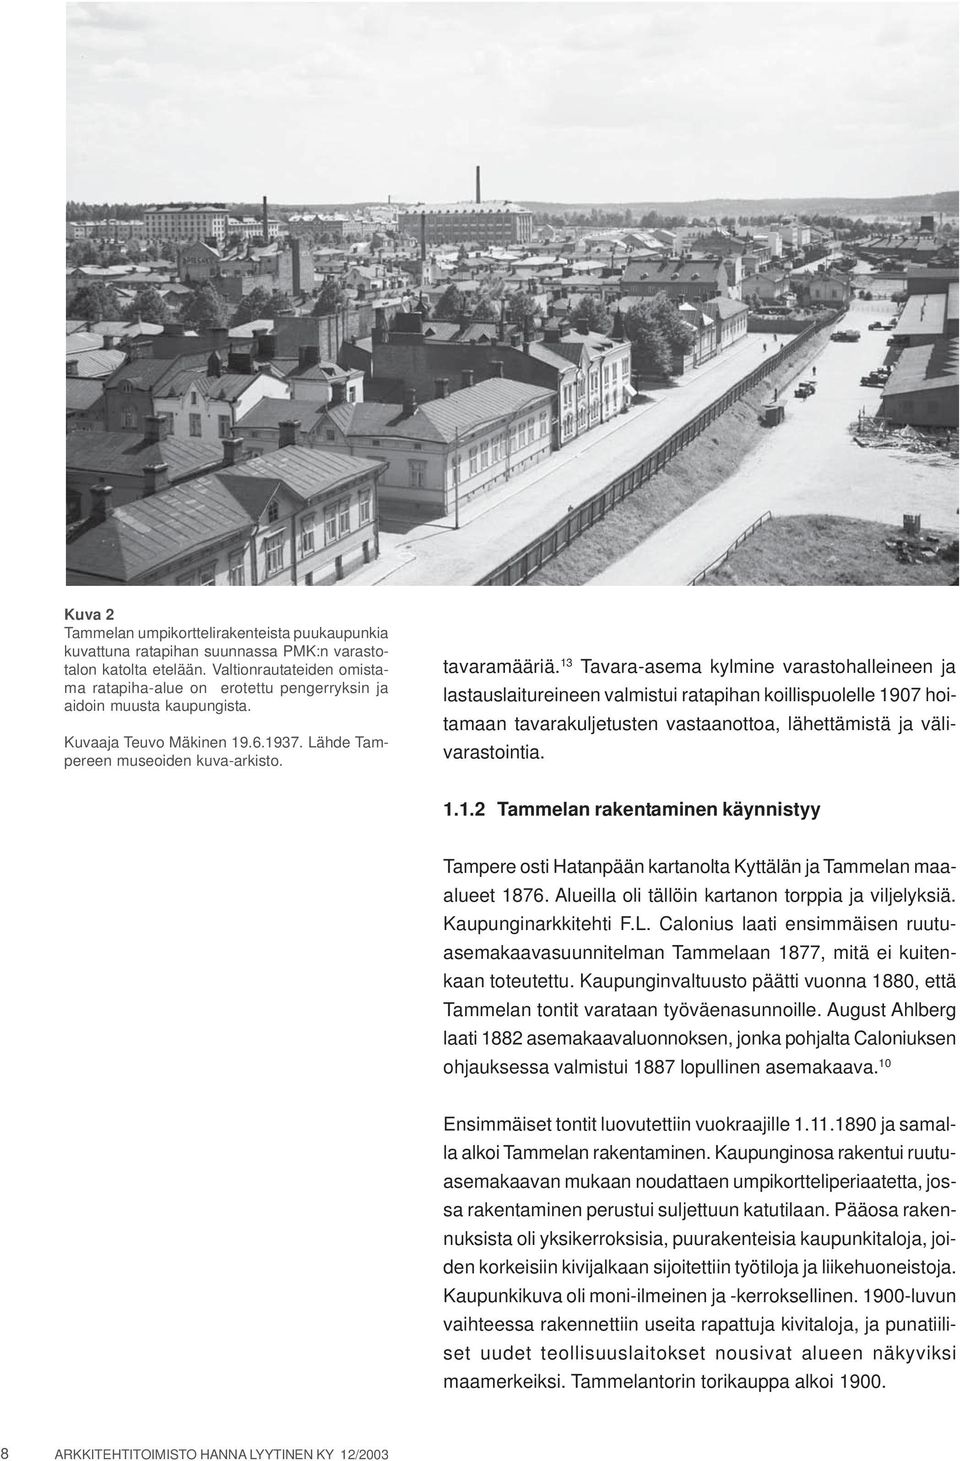 13 Tavara-asema kylmine varastohalleineen ja lastauslaitureineen valmistui ratapihan koillispuolelle 1907 hoitamaan tavarakuljetusten vastaanottoa, lähettämistä ja välivarastointia. 1.1.2 Tammelan rakentaminen käynnistyy Tampere osti Hatanpään kartanolta Kyttälän ja Tammelan maaalueet 1876.